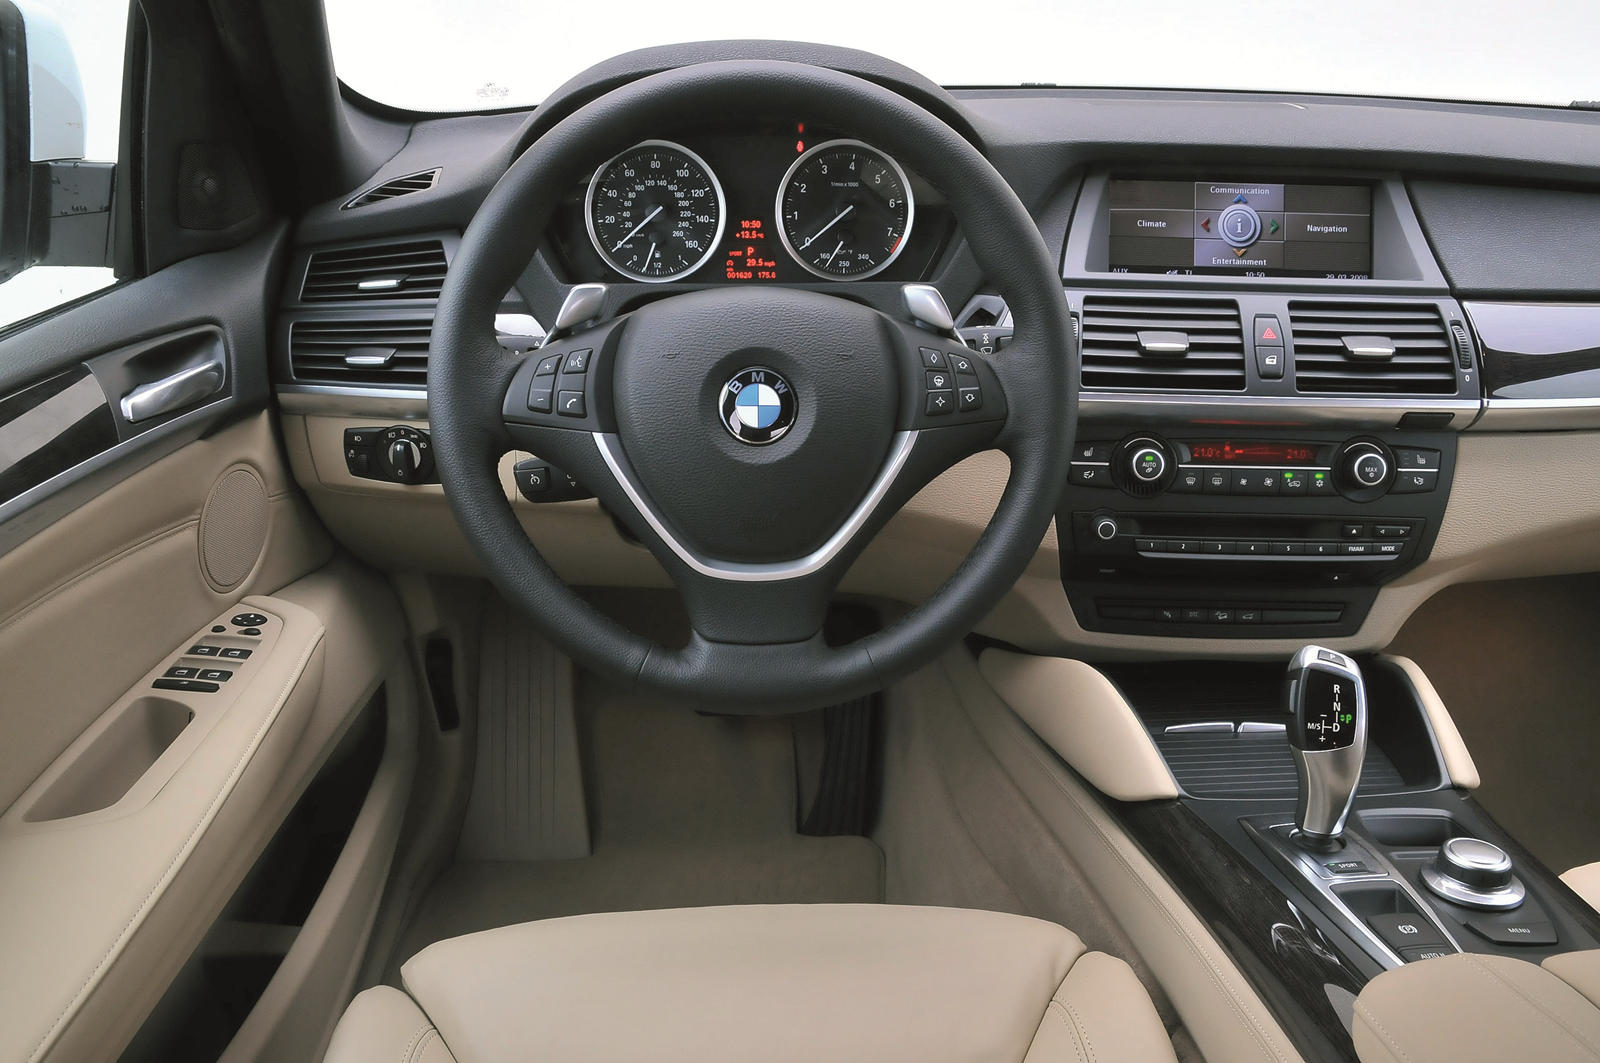 2010 BMW X6 M Review Editors Review  Car Reviews  Auto123